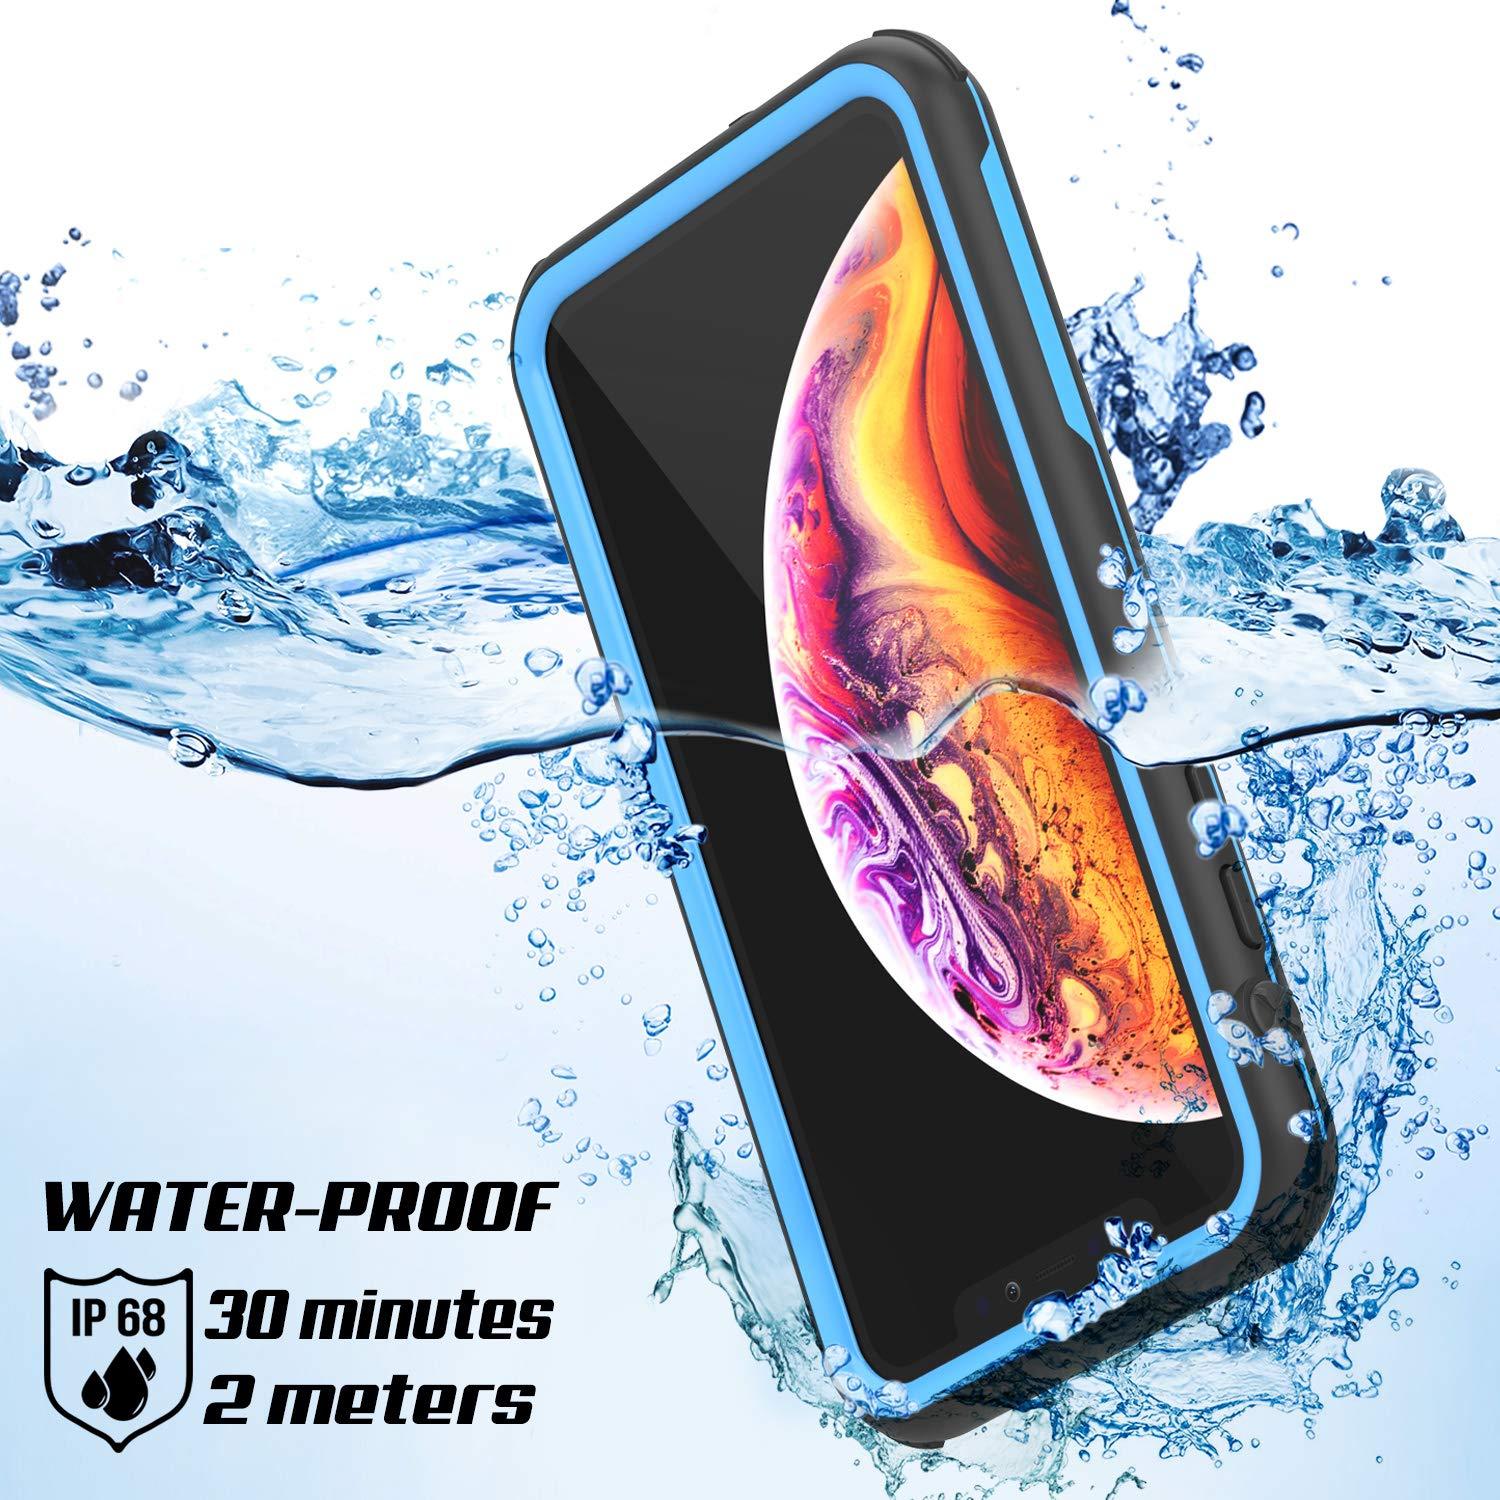 iPhone XR Waterproof IP68 Case, Punkcase [Blue] [Rapture Series]  W/Built in Screen Protector